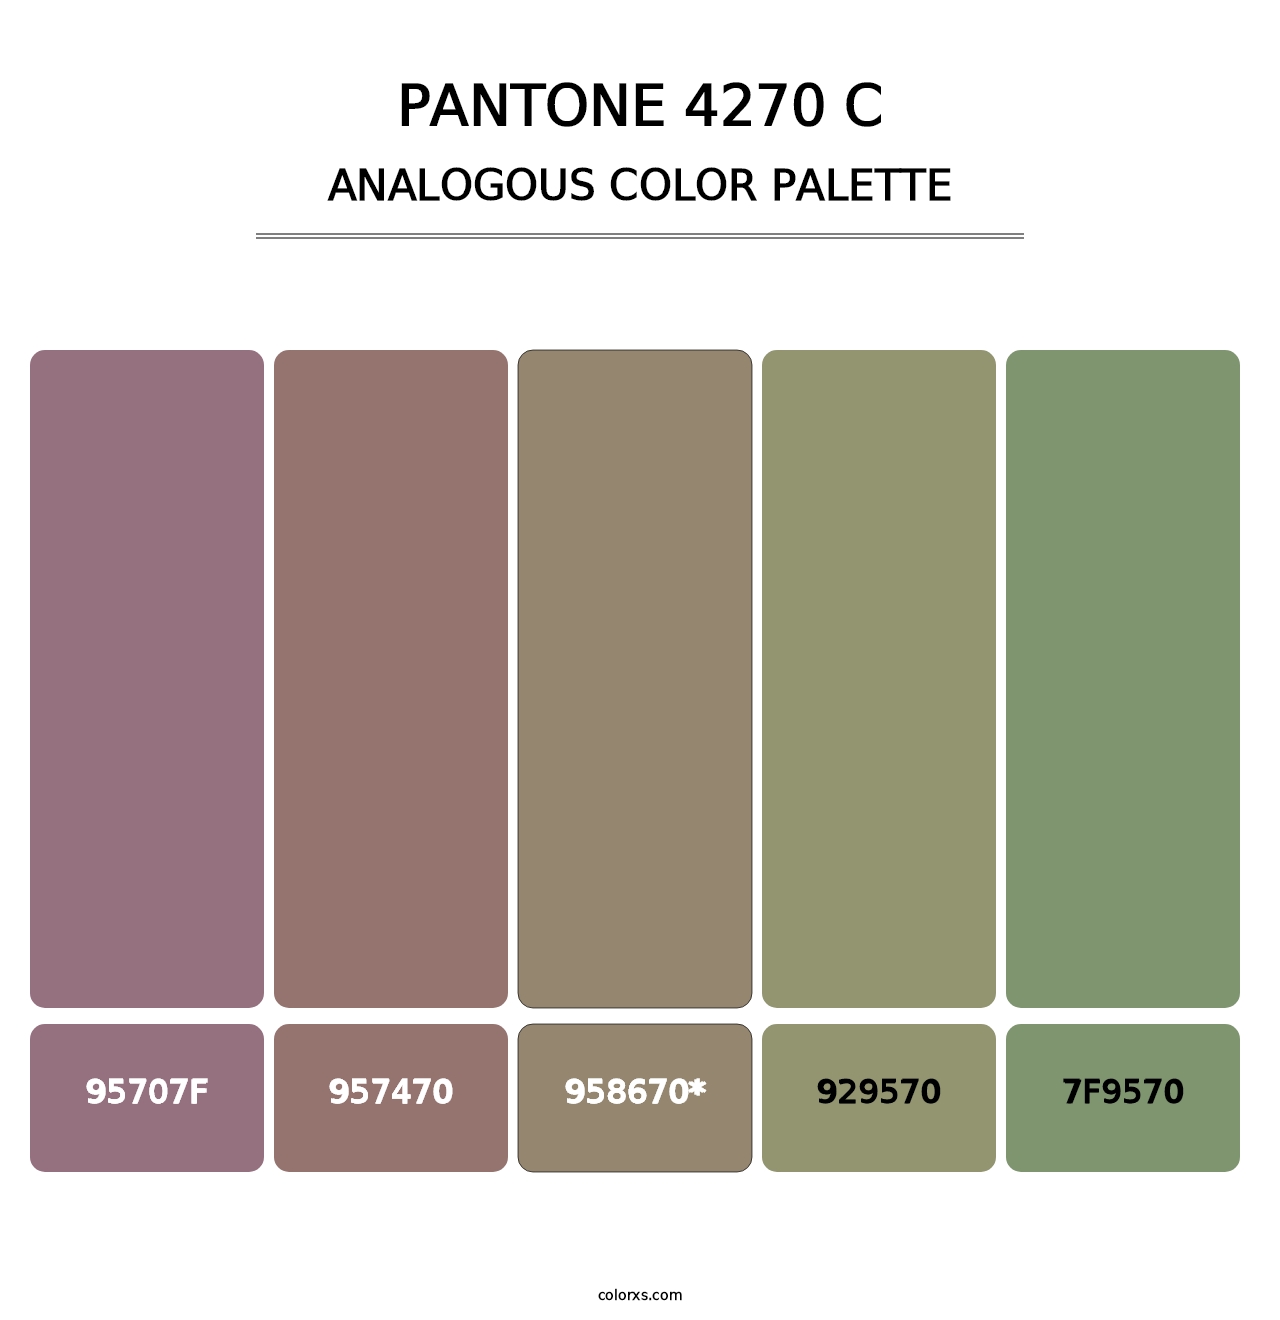 PANTONE 4270 C - Analogous Color Palette